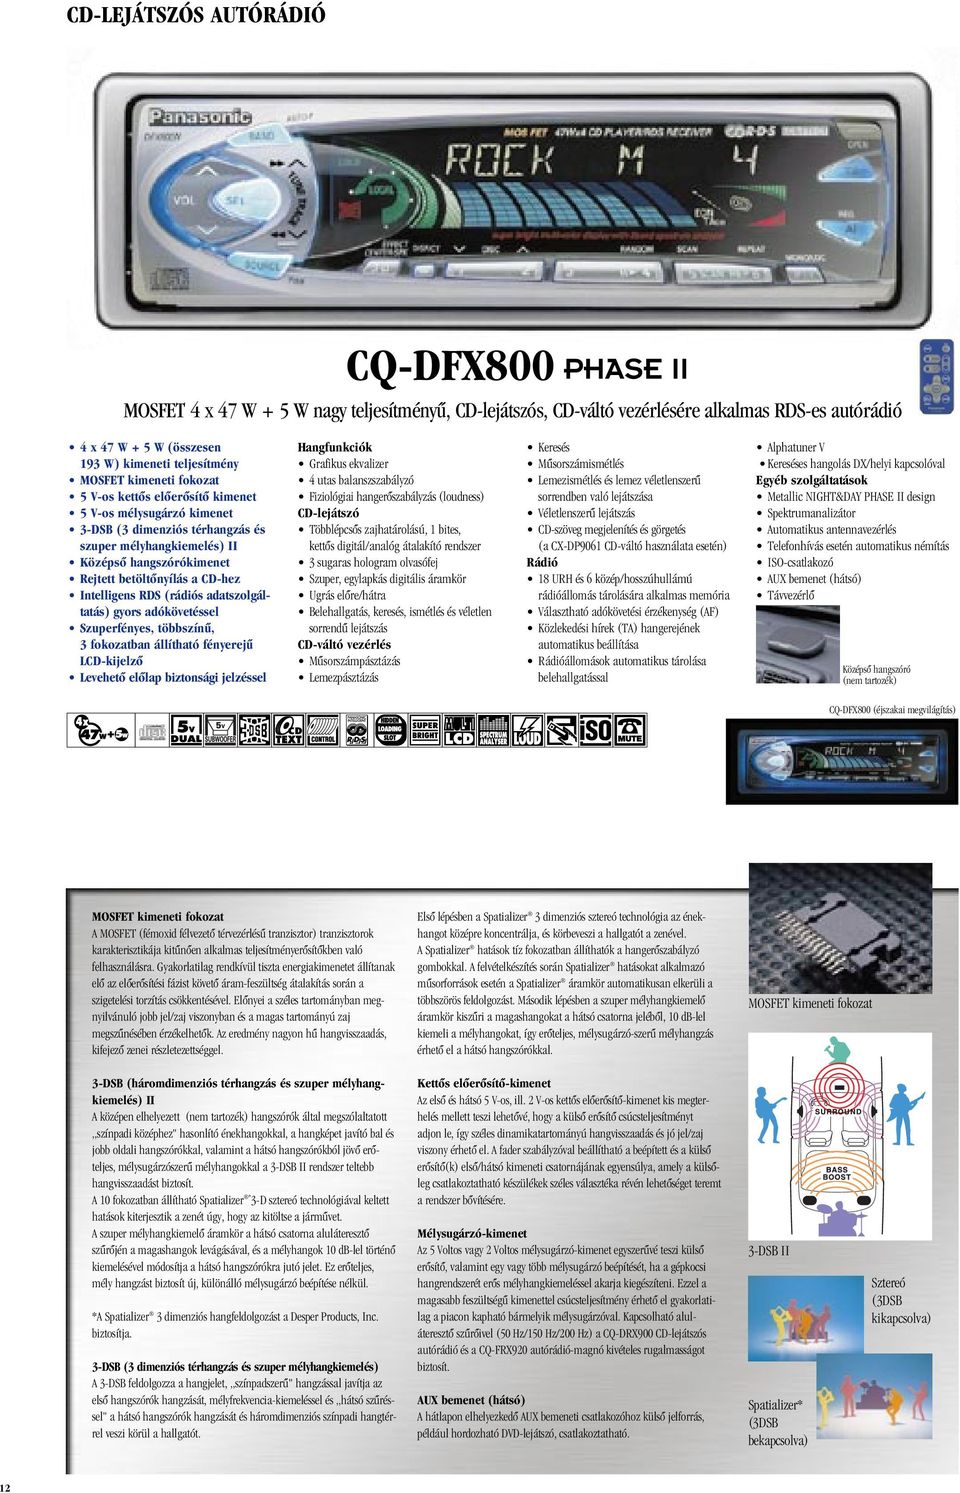 Szuperfényes, többszínû, 3 fokozatban állítható fényerejû LCD-kijelzô Hangfunkciók Grafikus ekvalizer 4 utas balanszszabályzó Fiziológiai hangerôszabályzás (loudness) CD-lejátszó Többlépcsôs